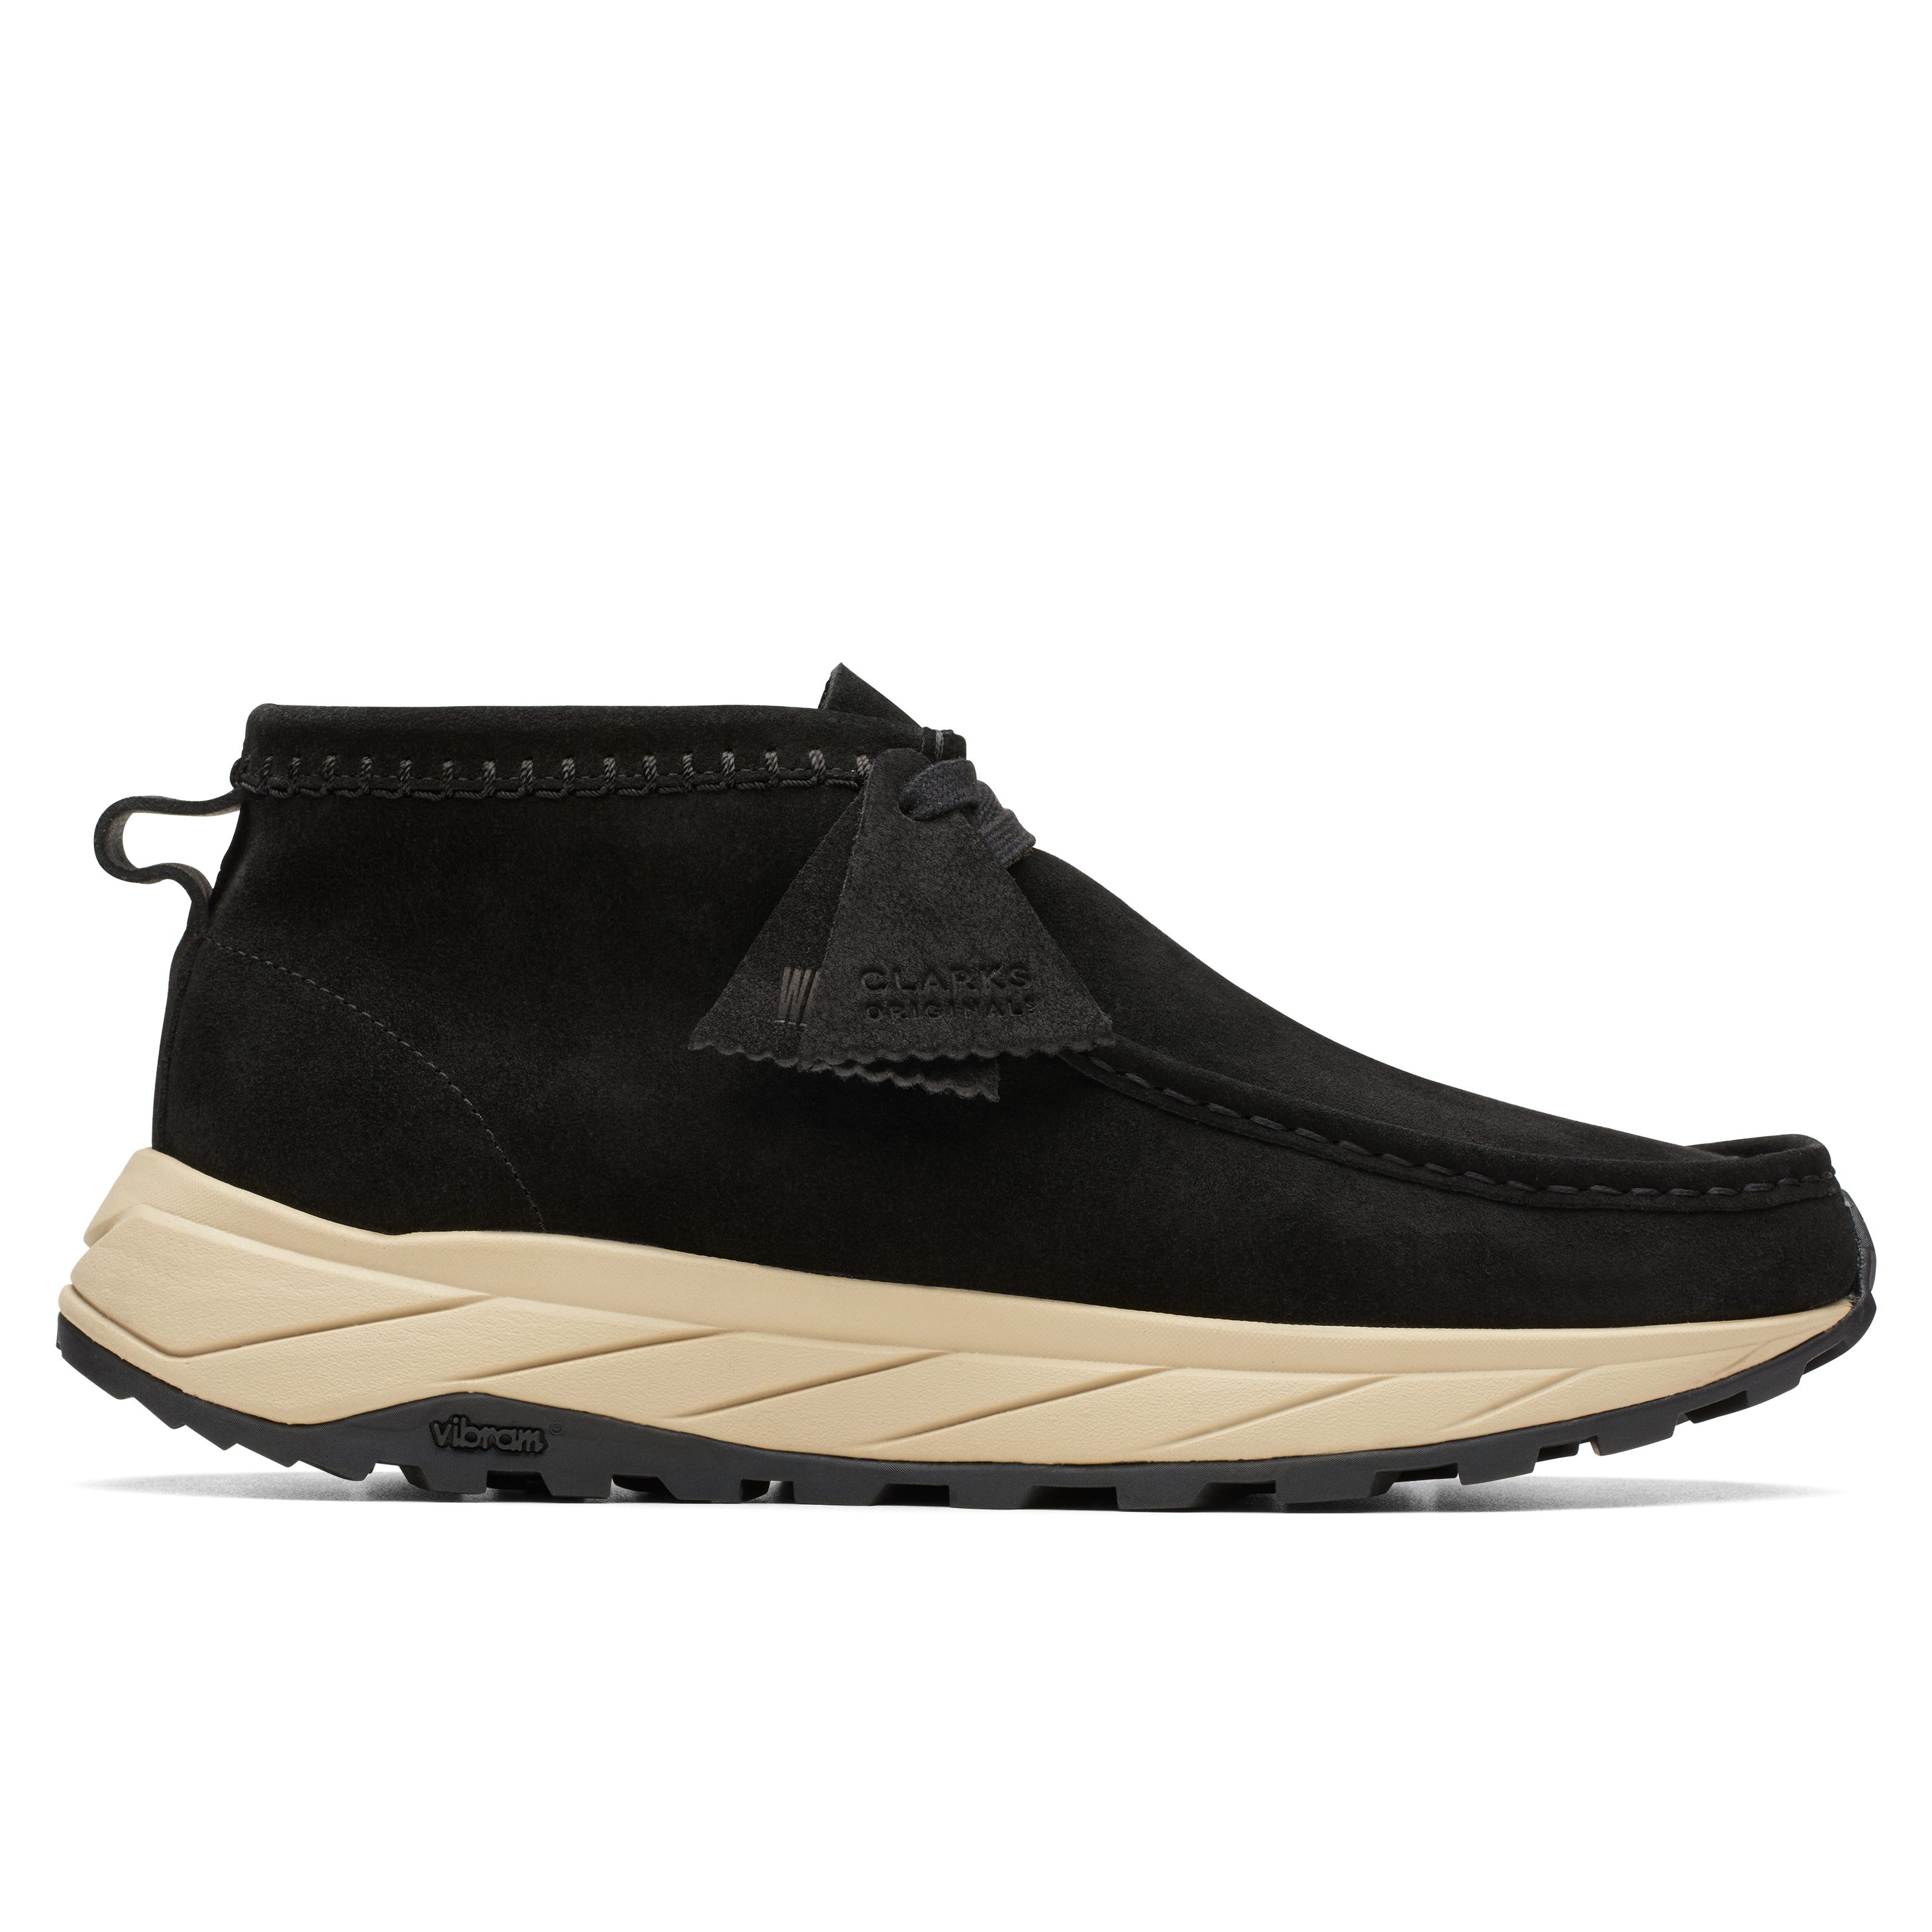 Clarks Wallabee Eden Sneaker Boot - Black | Trail Sneakers | Huckberry